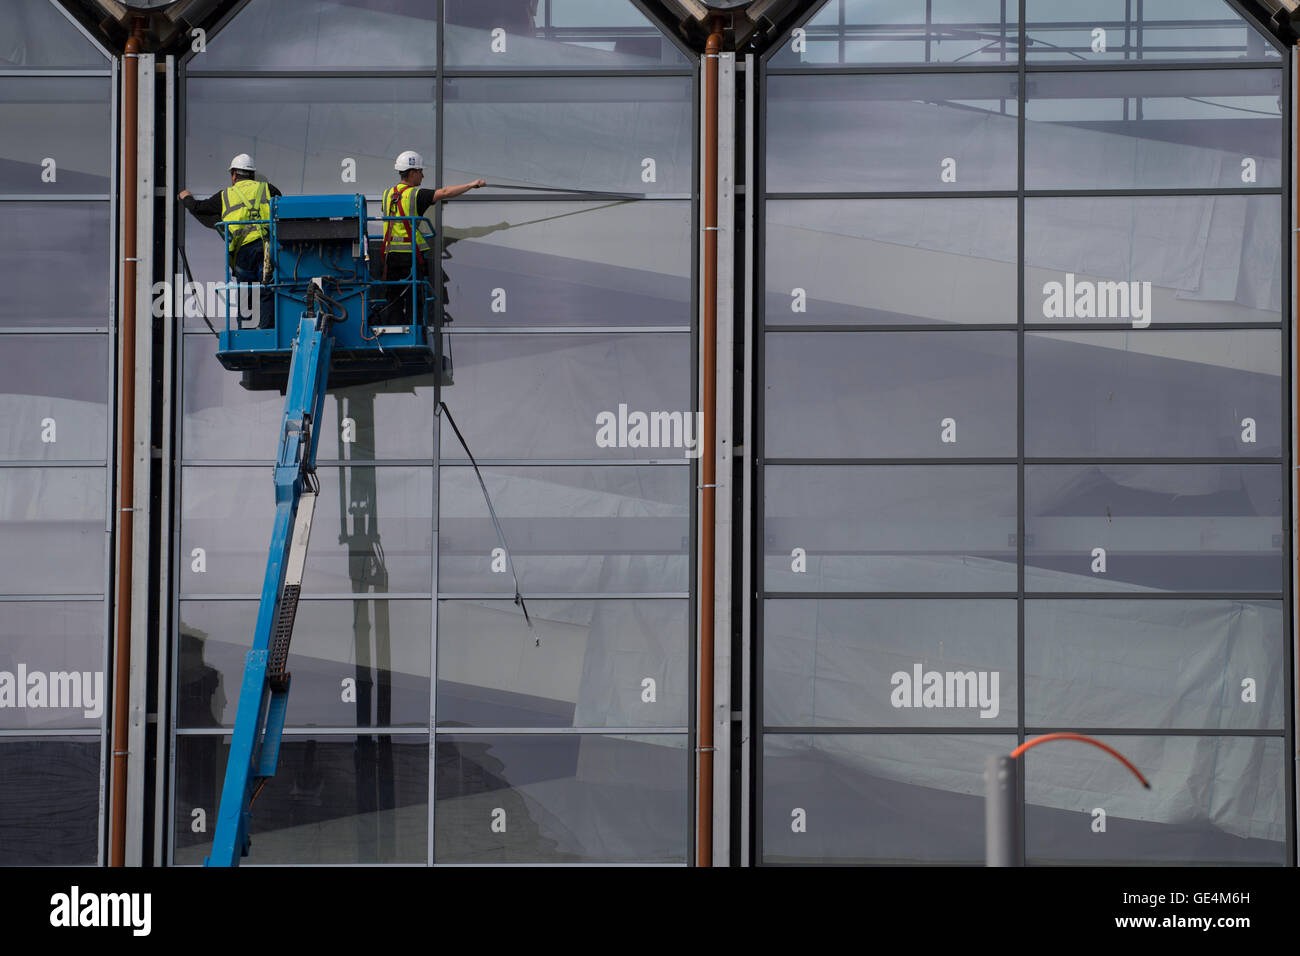 Les travaux de construction au Royaume-Uni : deux travailleurs dans une plate-forme 'cherry picker" travaillant à l'extérieur du vitrage d'un nouveau Tesco un magasin Marks & Spencer, Aberystwyth Wales UK Banque D'Images